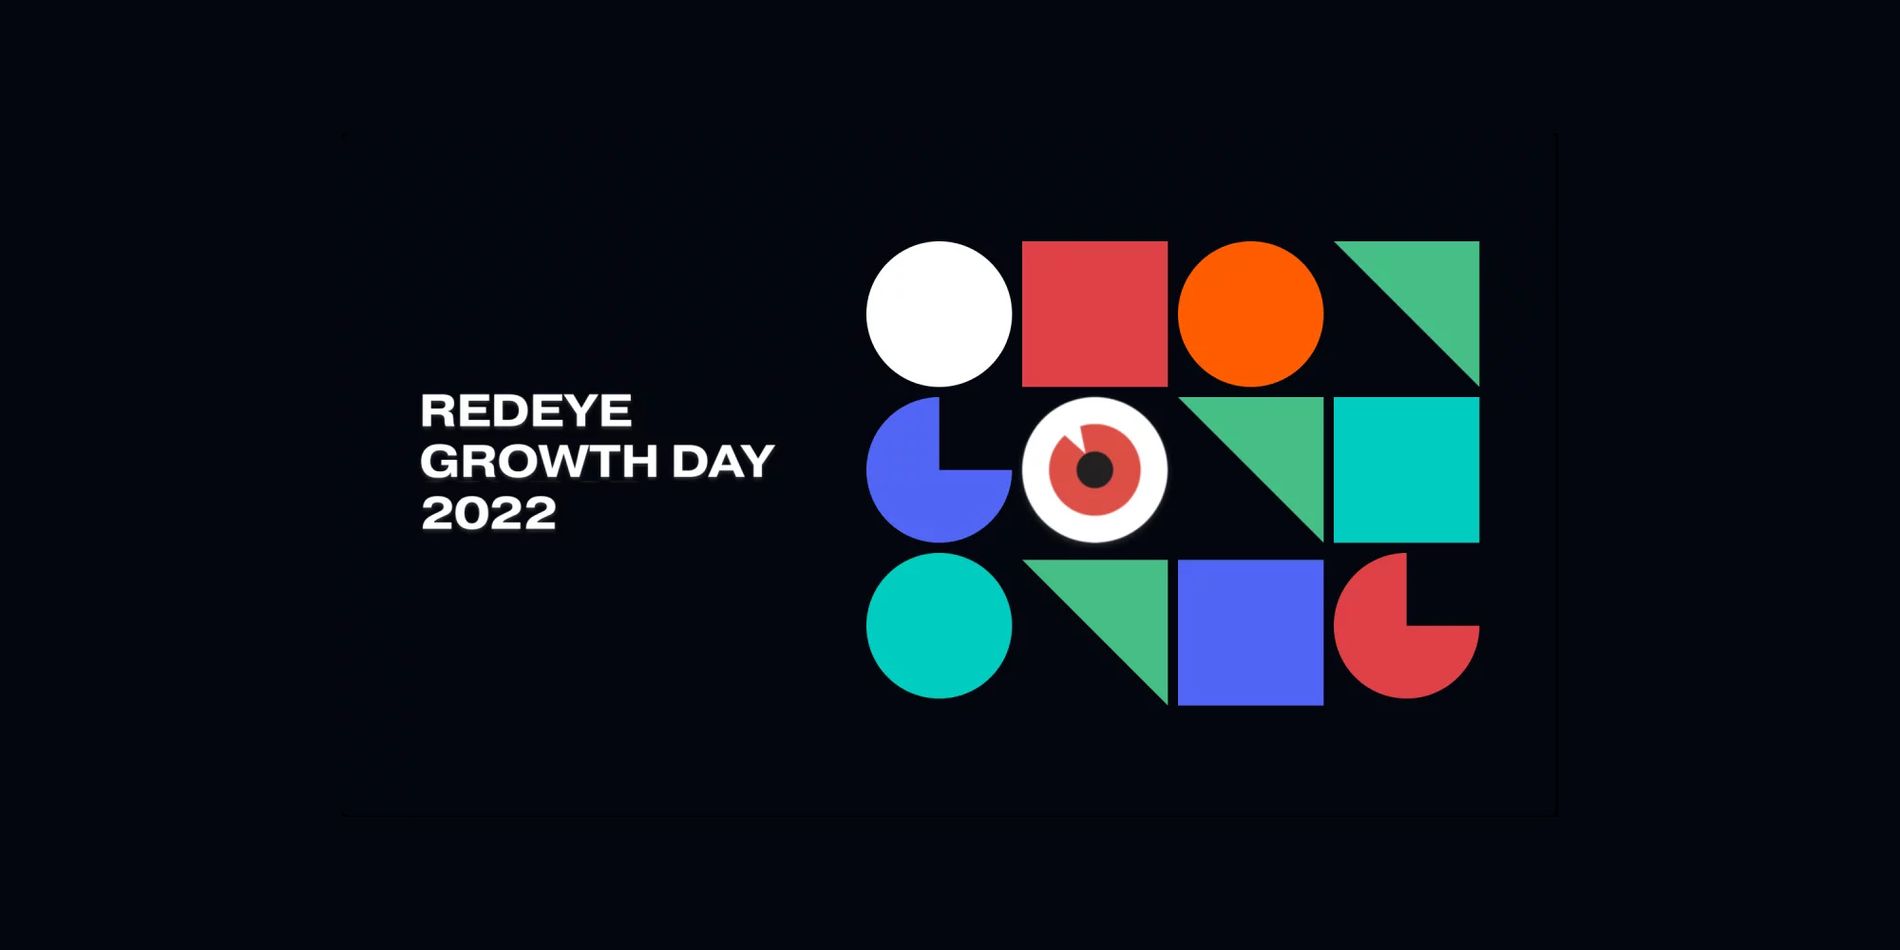 Redeye Growth Day 2022